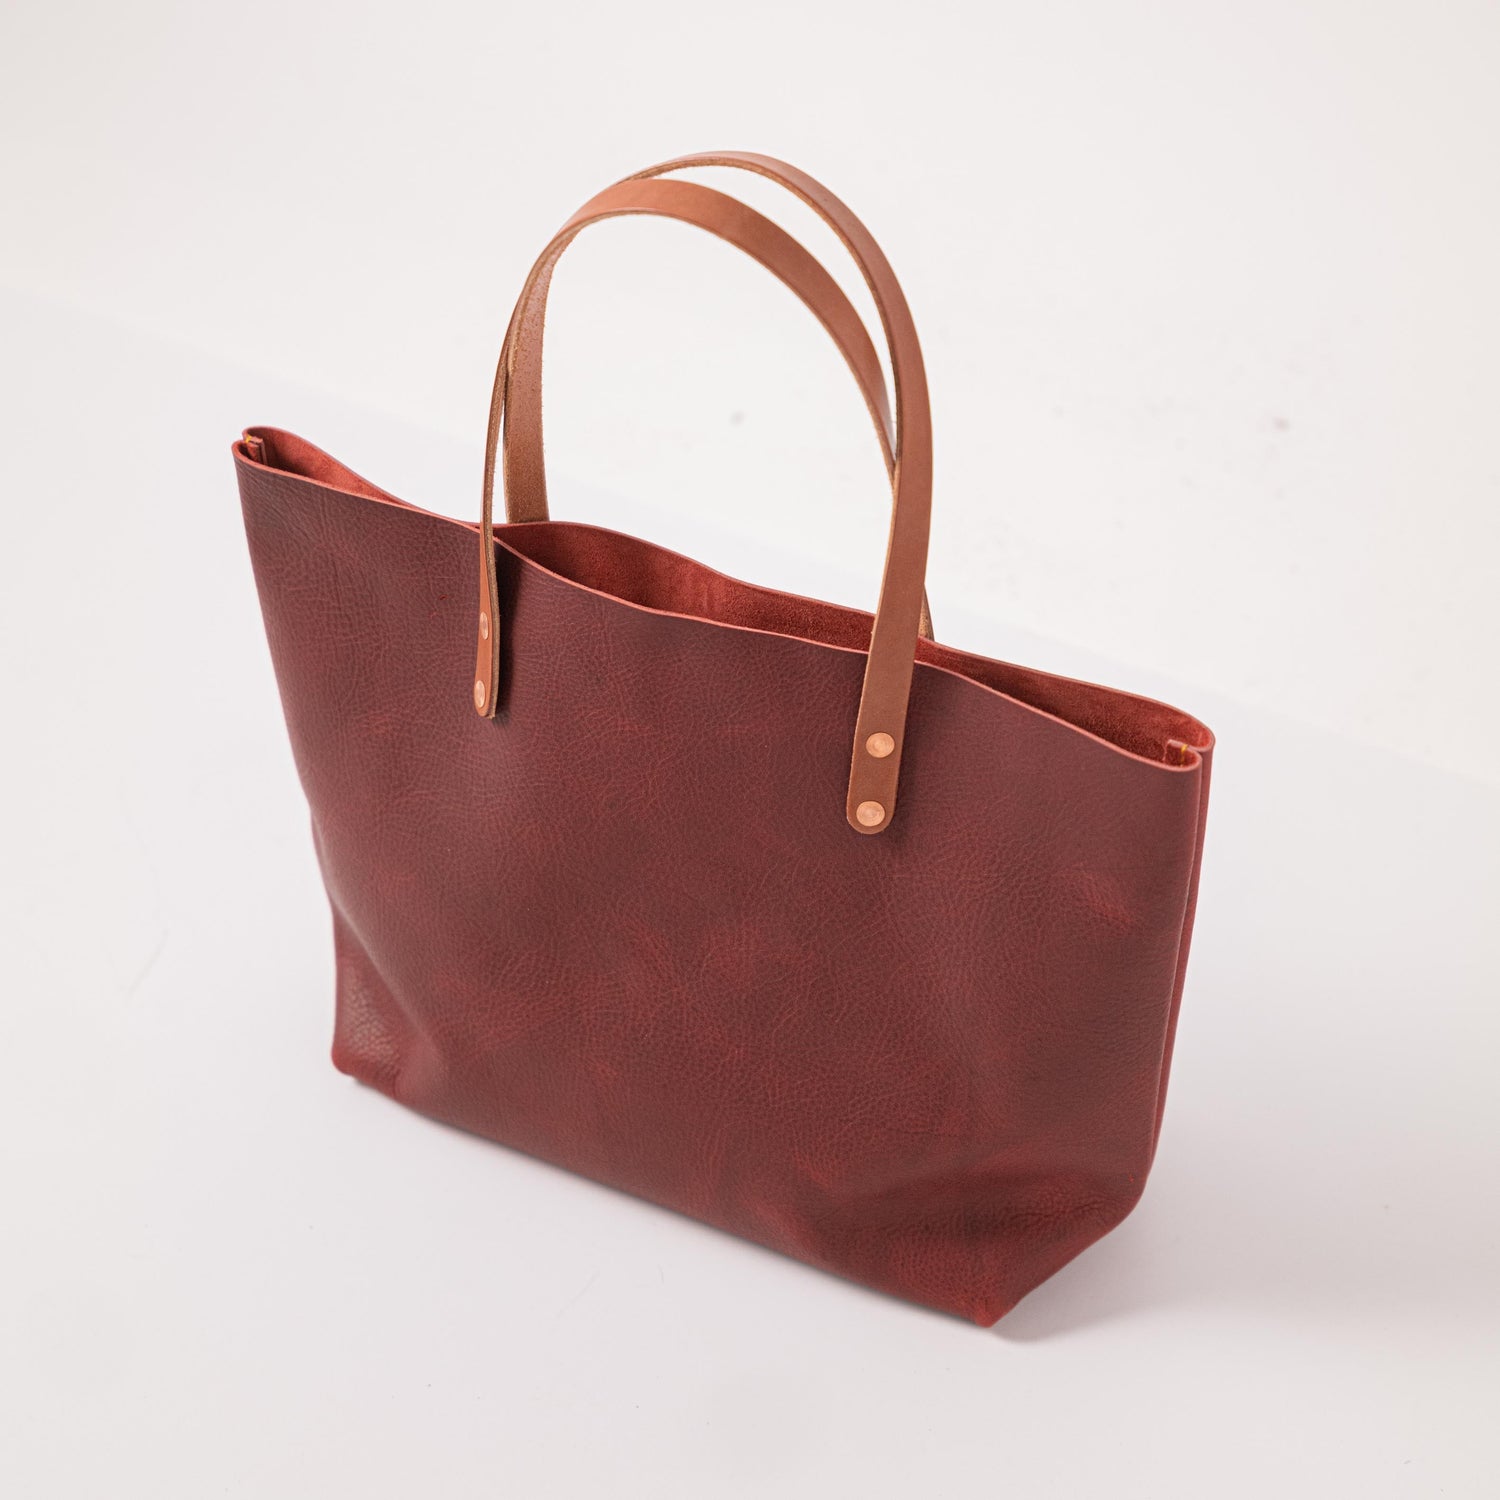 RED(V) Handbags & Tote Bags